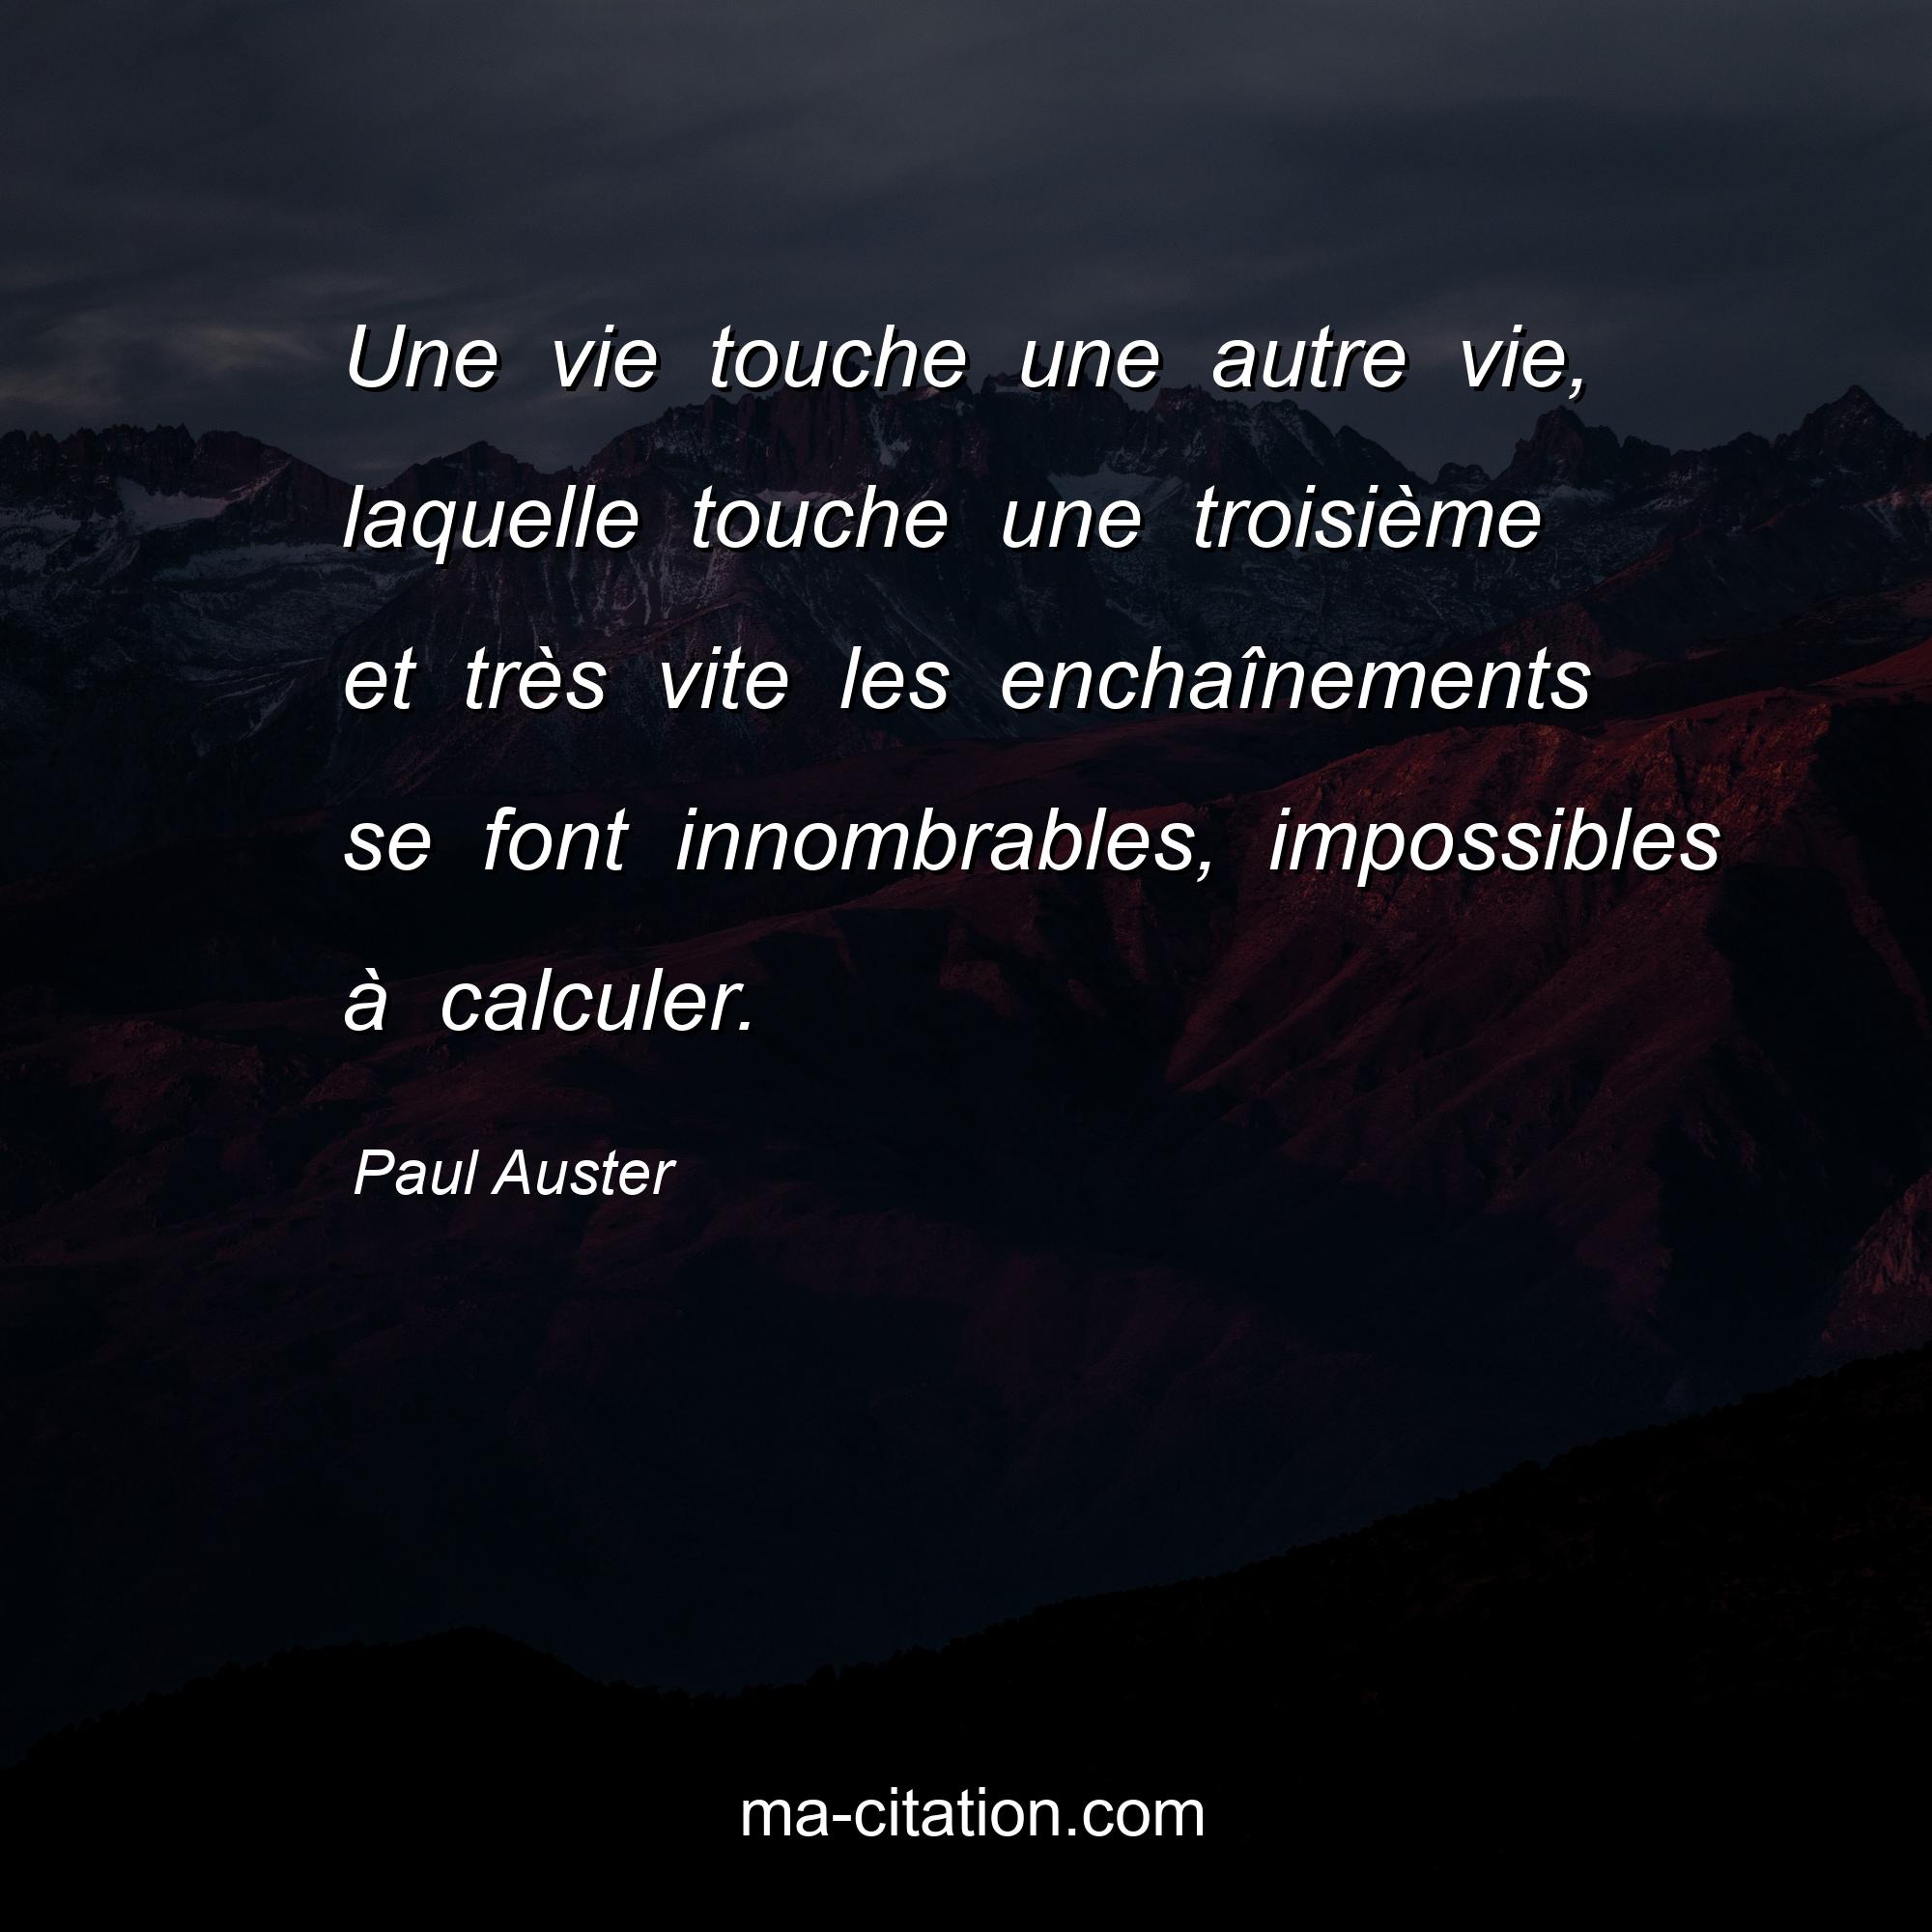 Paul Auster : Une vie touche une autre vie, laquelle touche une troisième et très vite les enchaînements se font innombrables, impossibles à calculer.